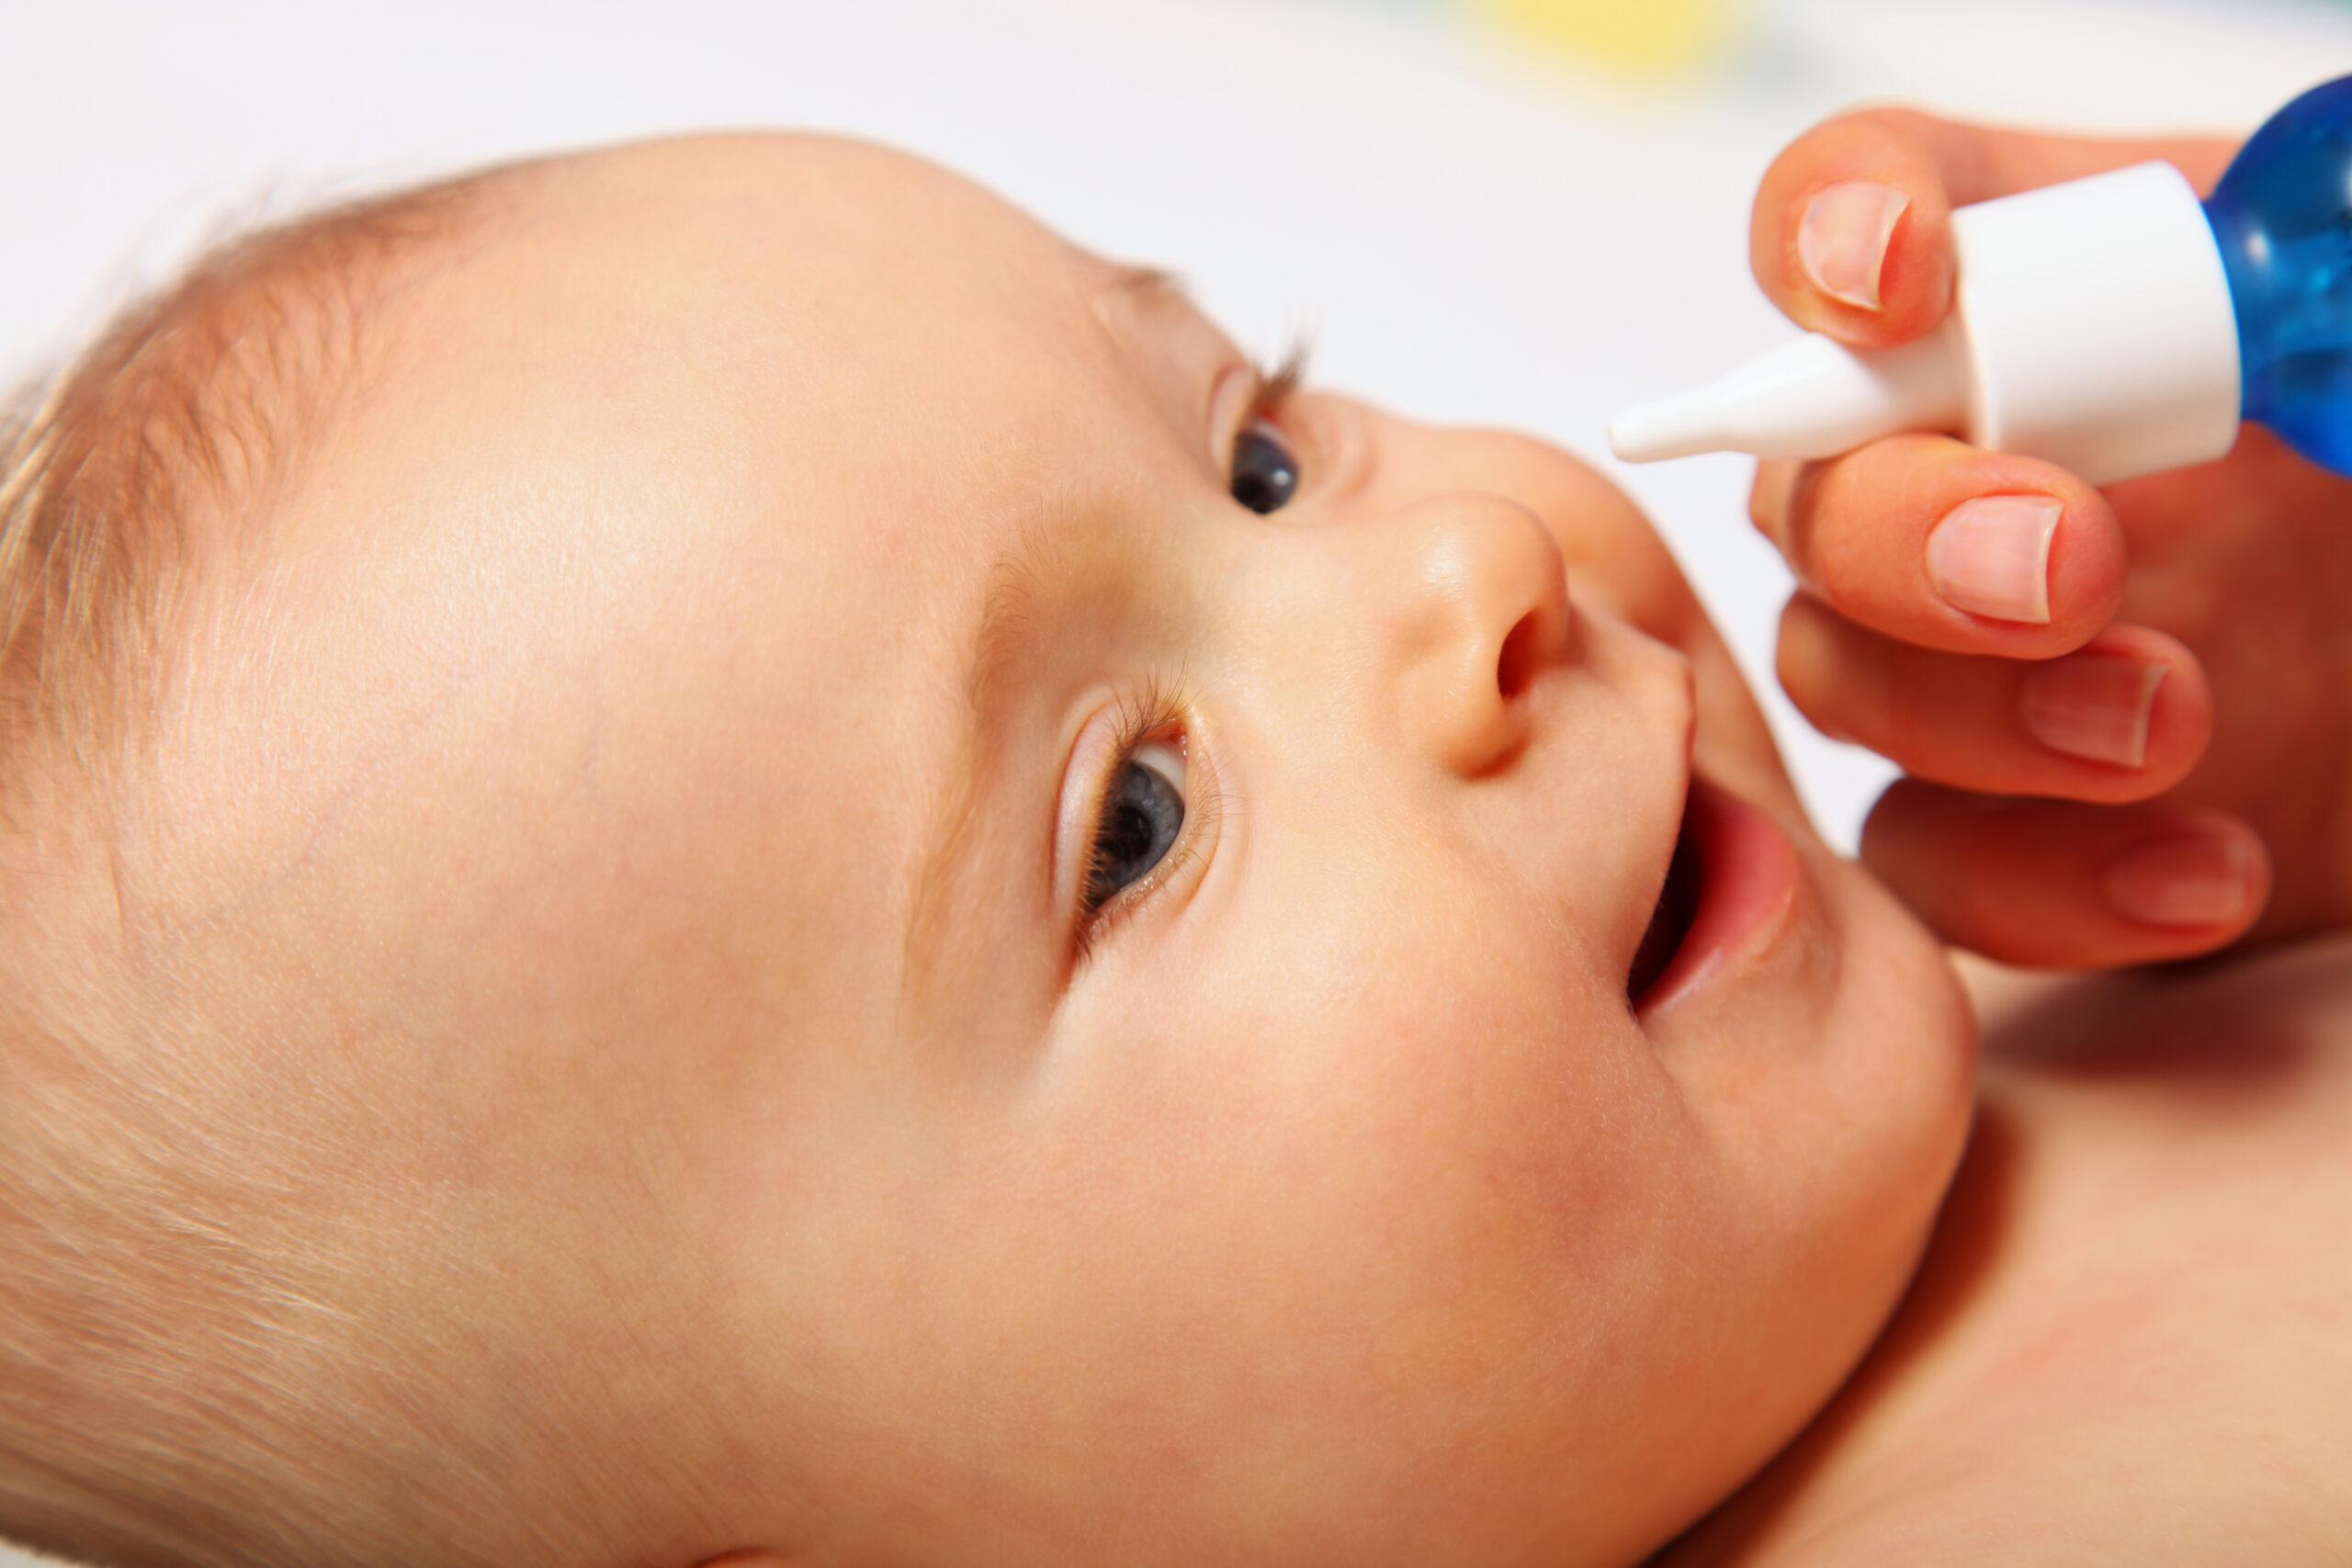 I lavaggi nasali sono pericolosi per i neonati?